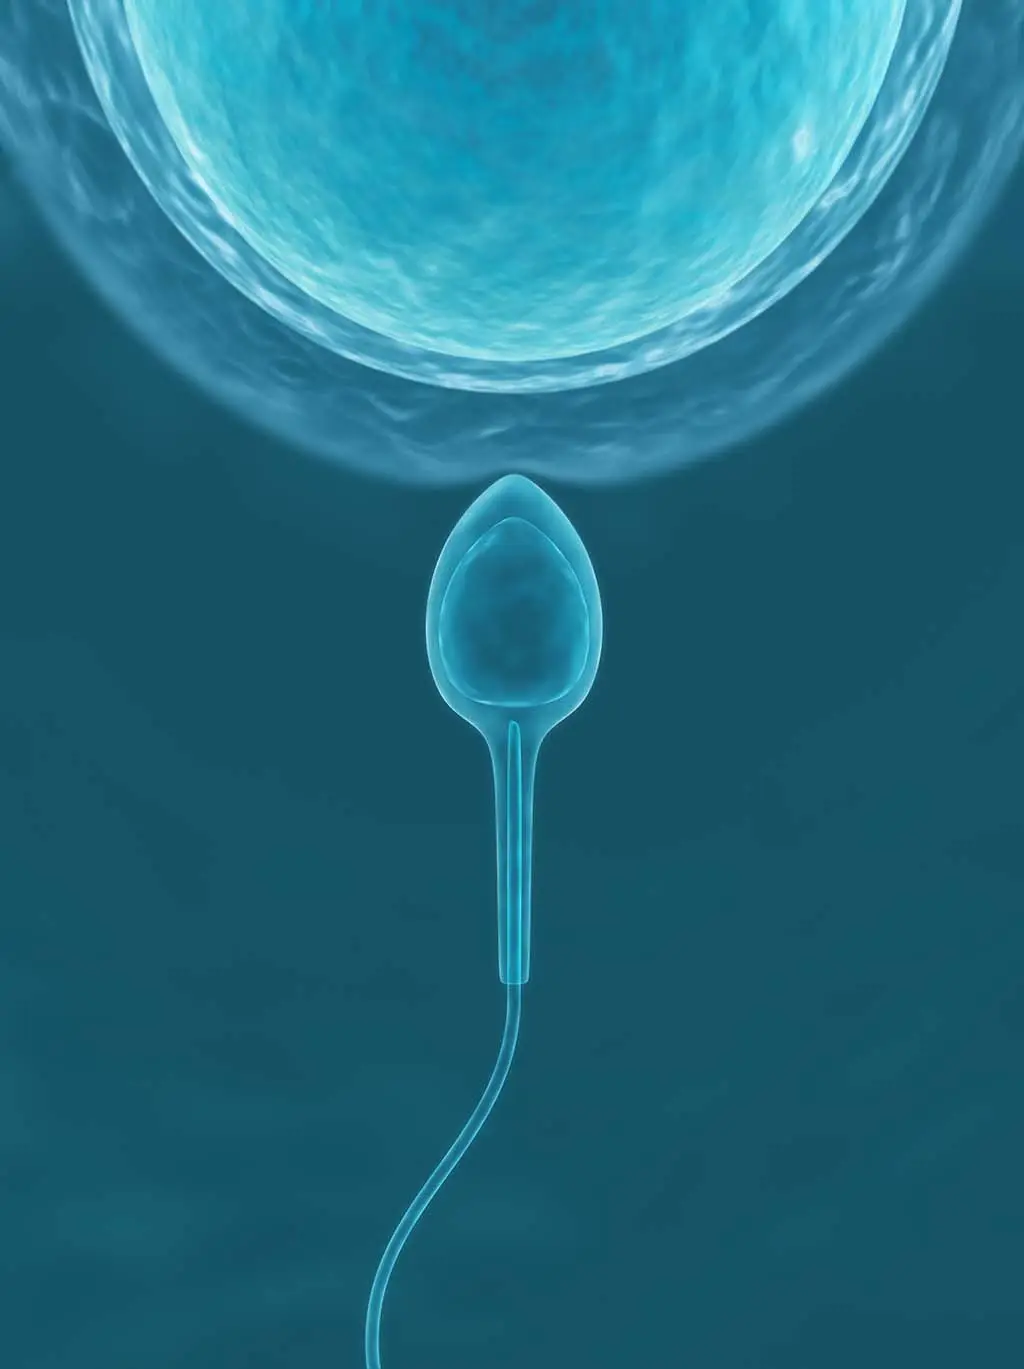 Εξωσωματική Γονιμοποίηση (IVF)